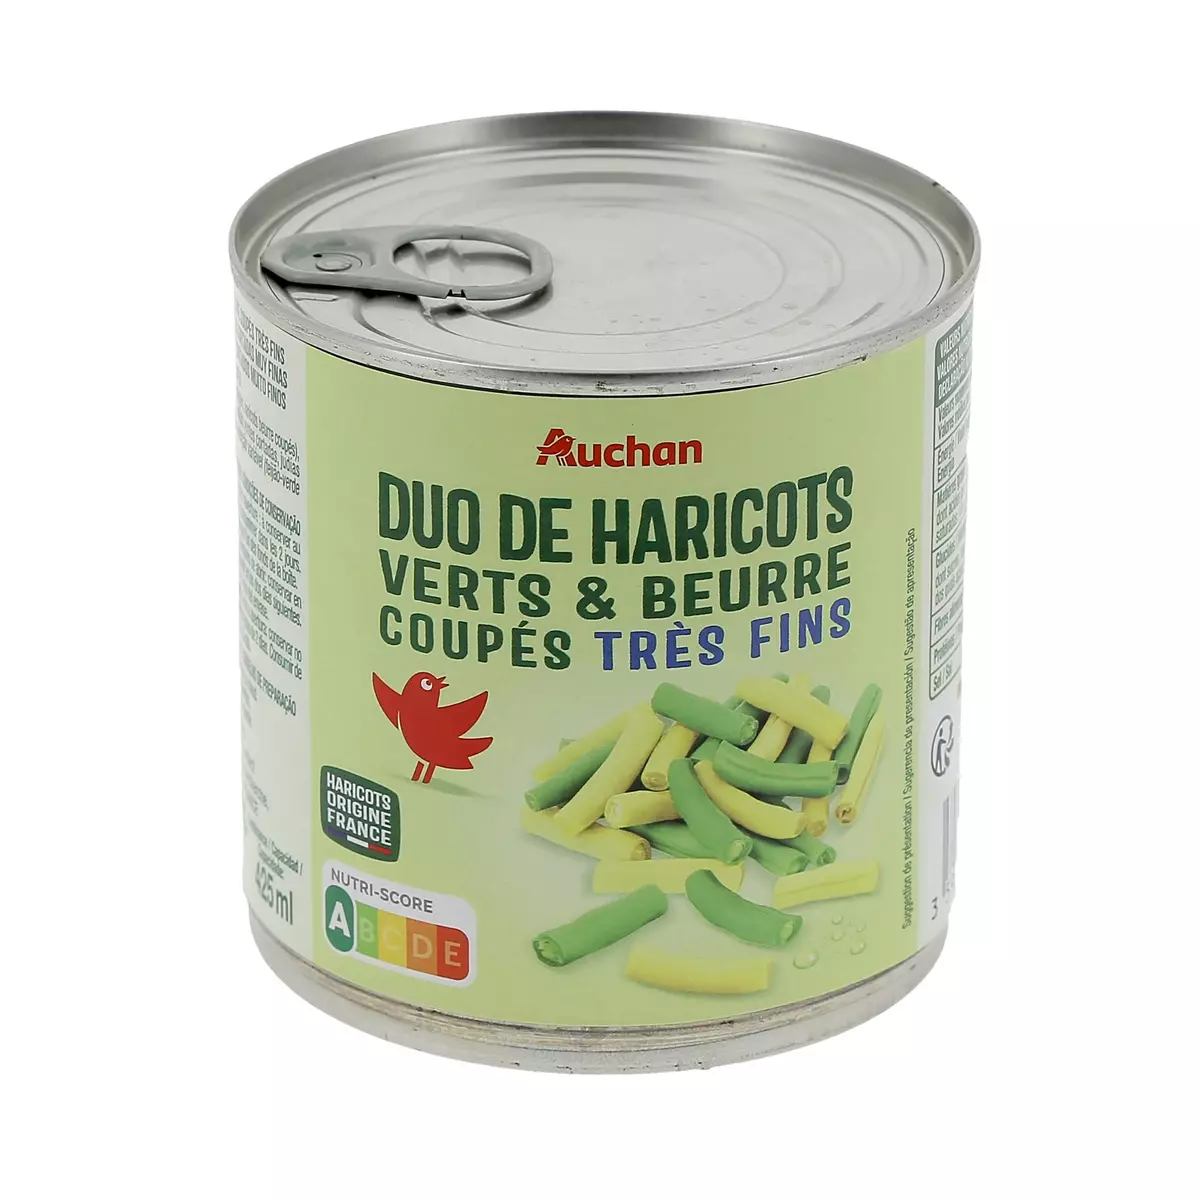 AUCHAN Duo de haricots verts et beurre extra-fins origine France 225g